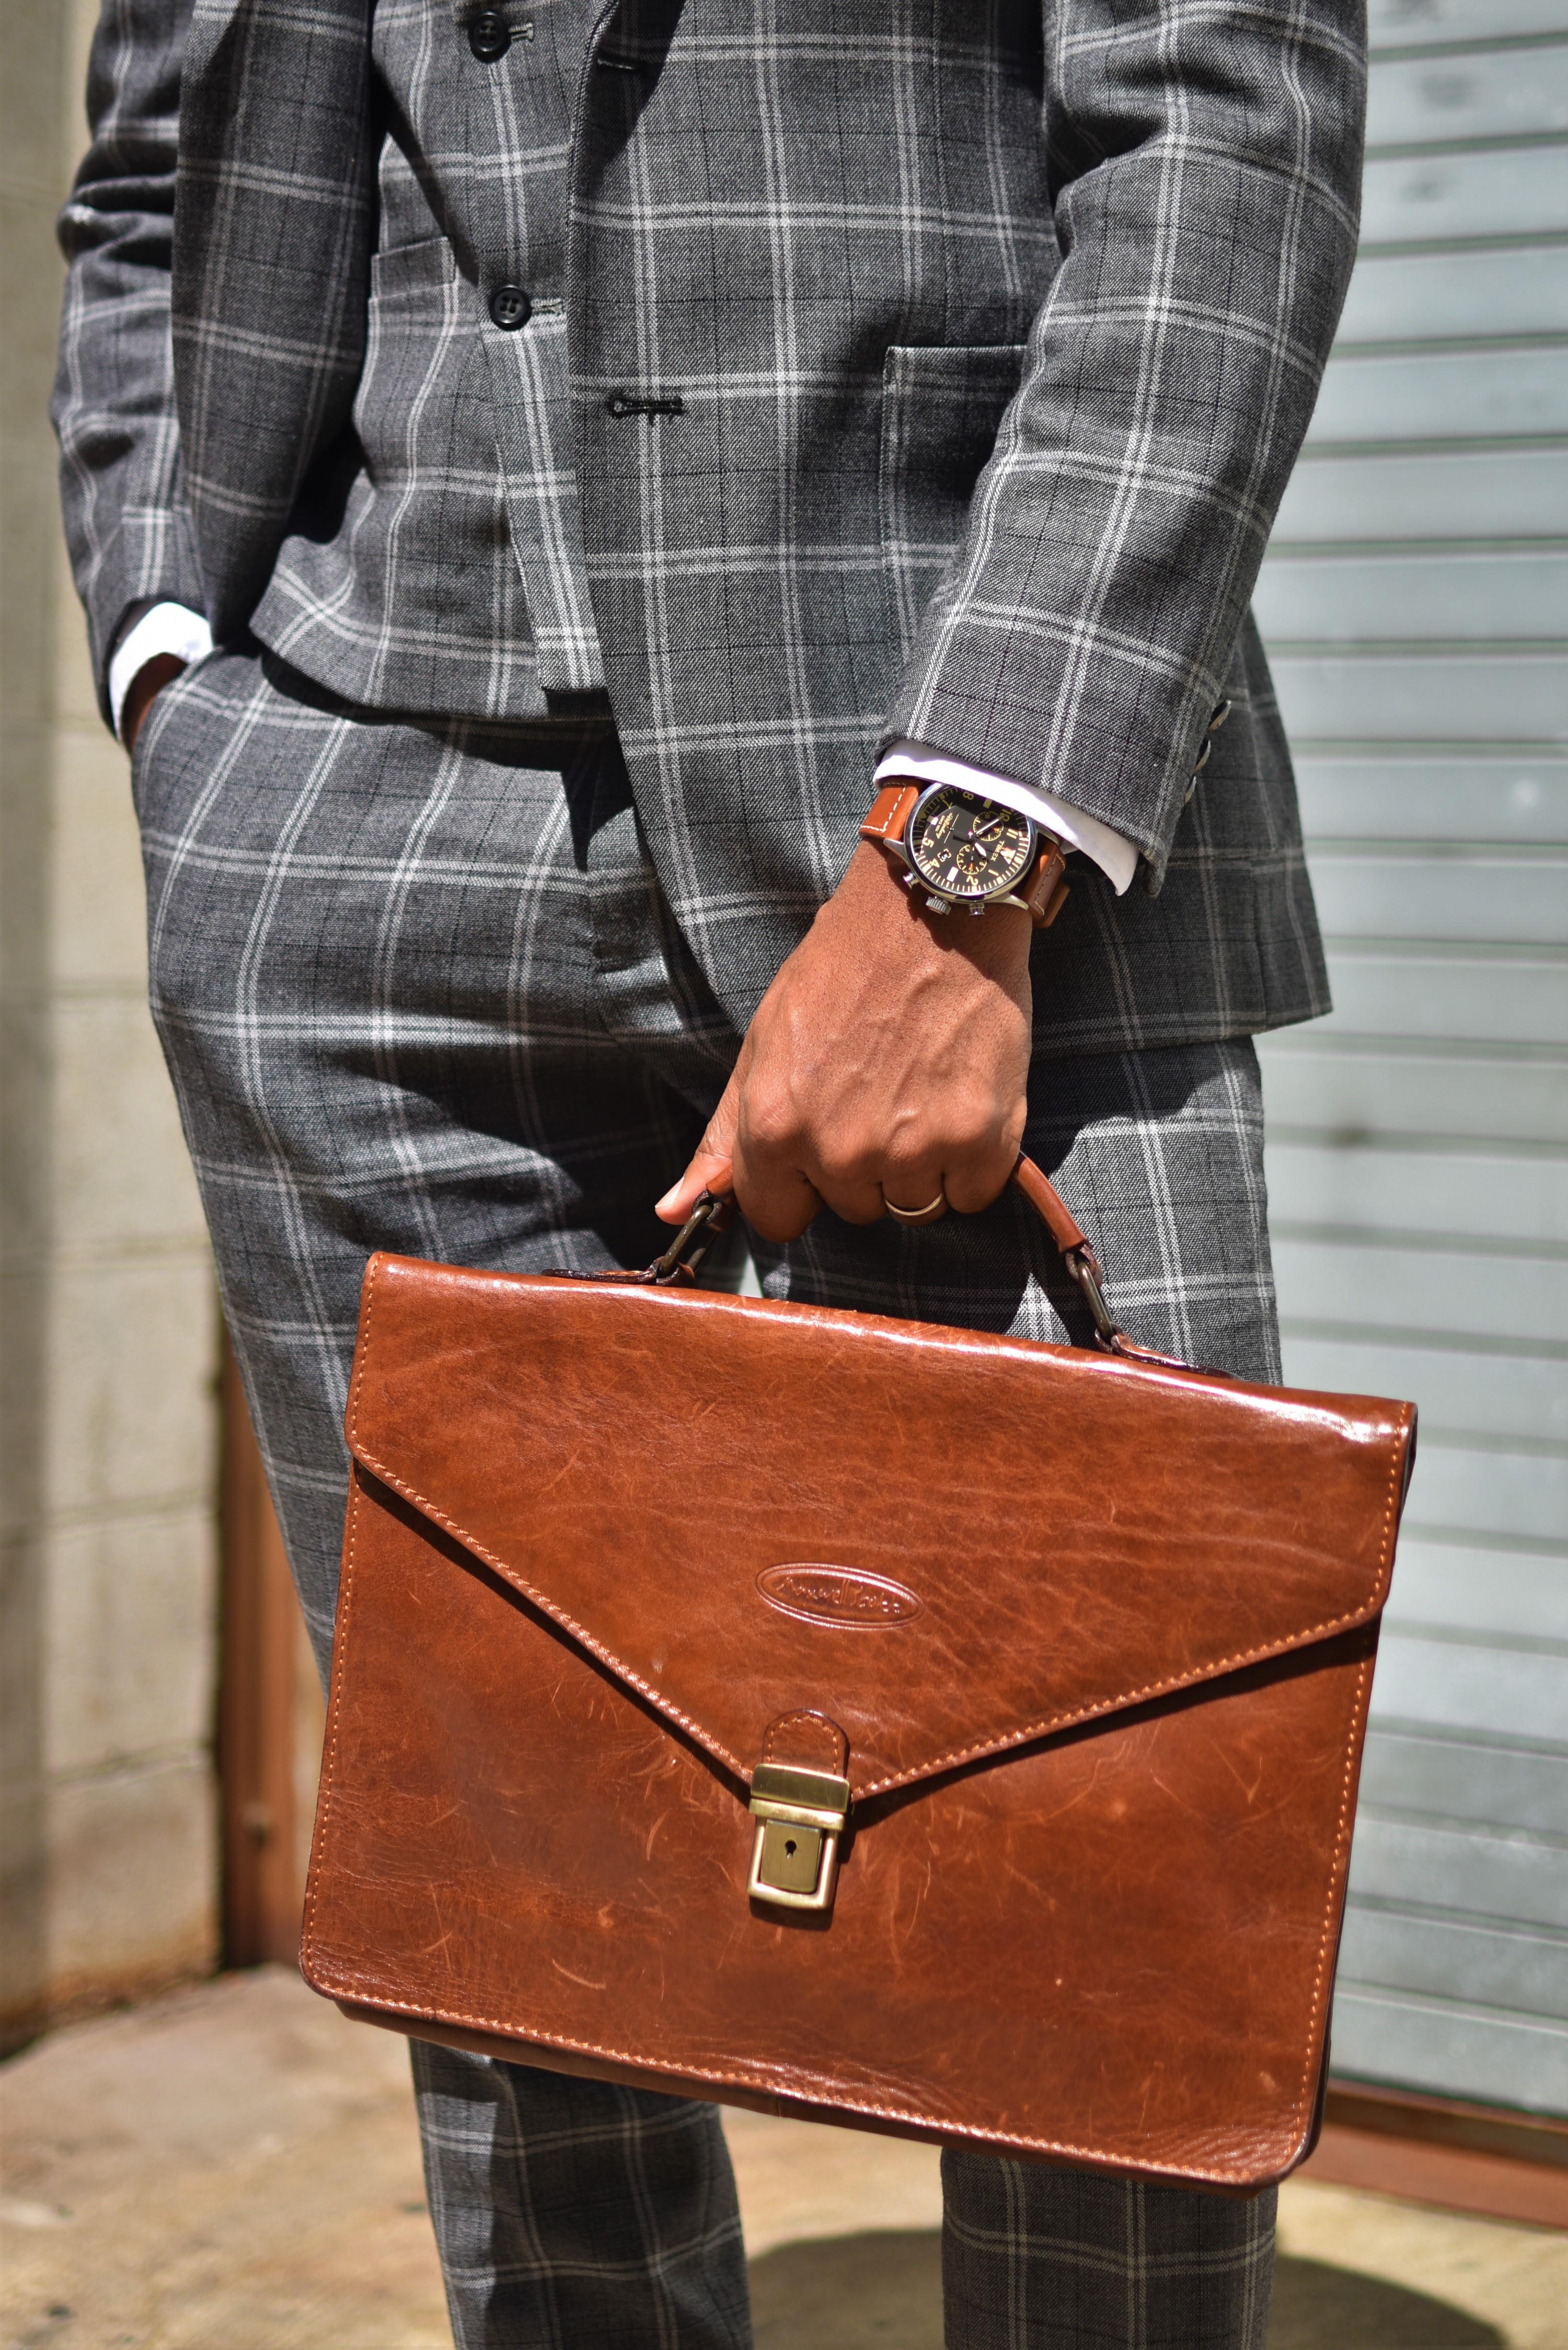 Sabir M. Peele Men's Style Pro in Grey Plaid Tailor 4 Less Suit